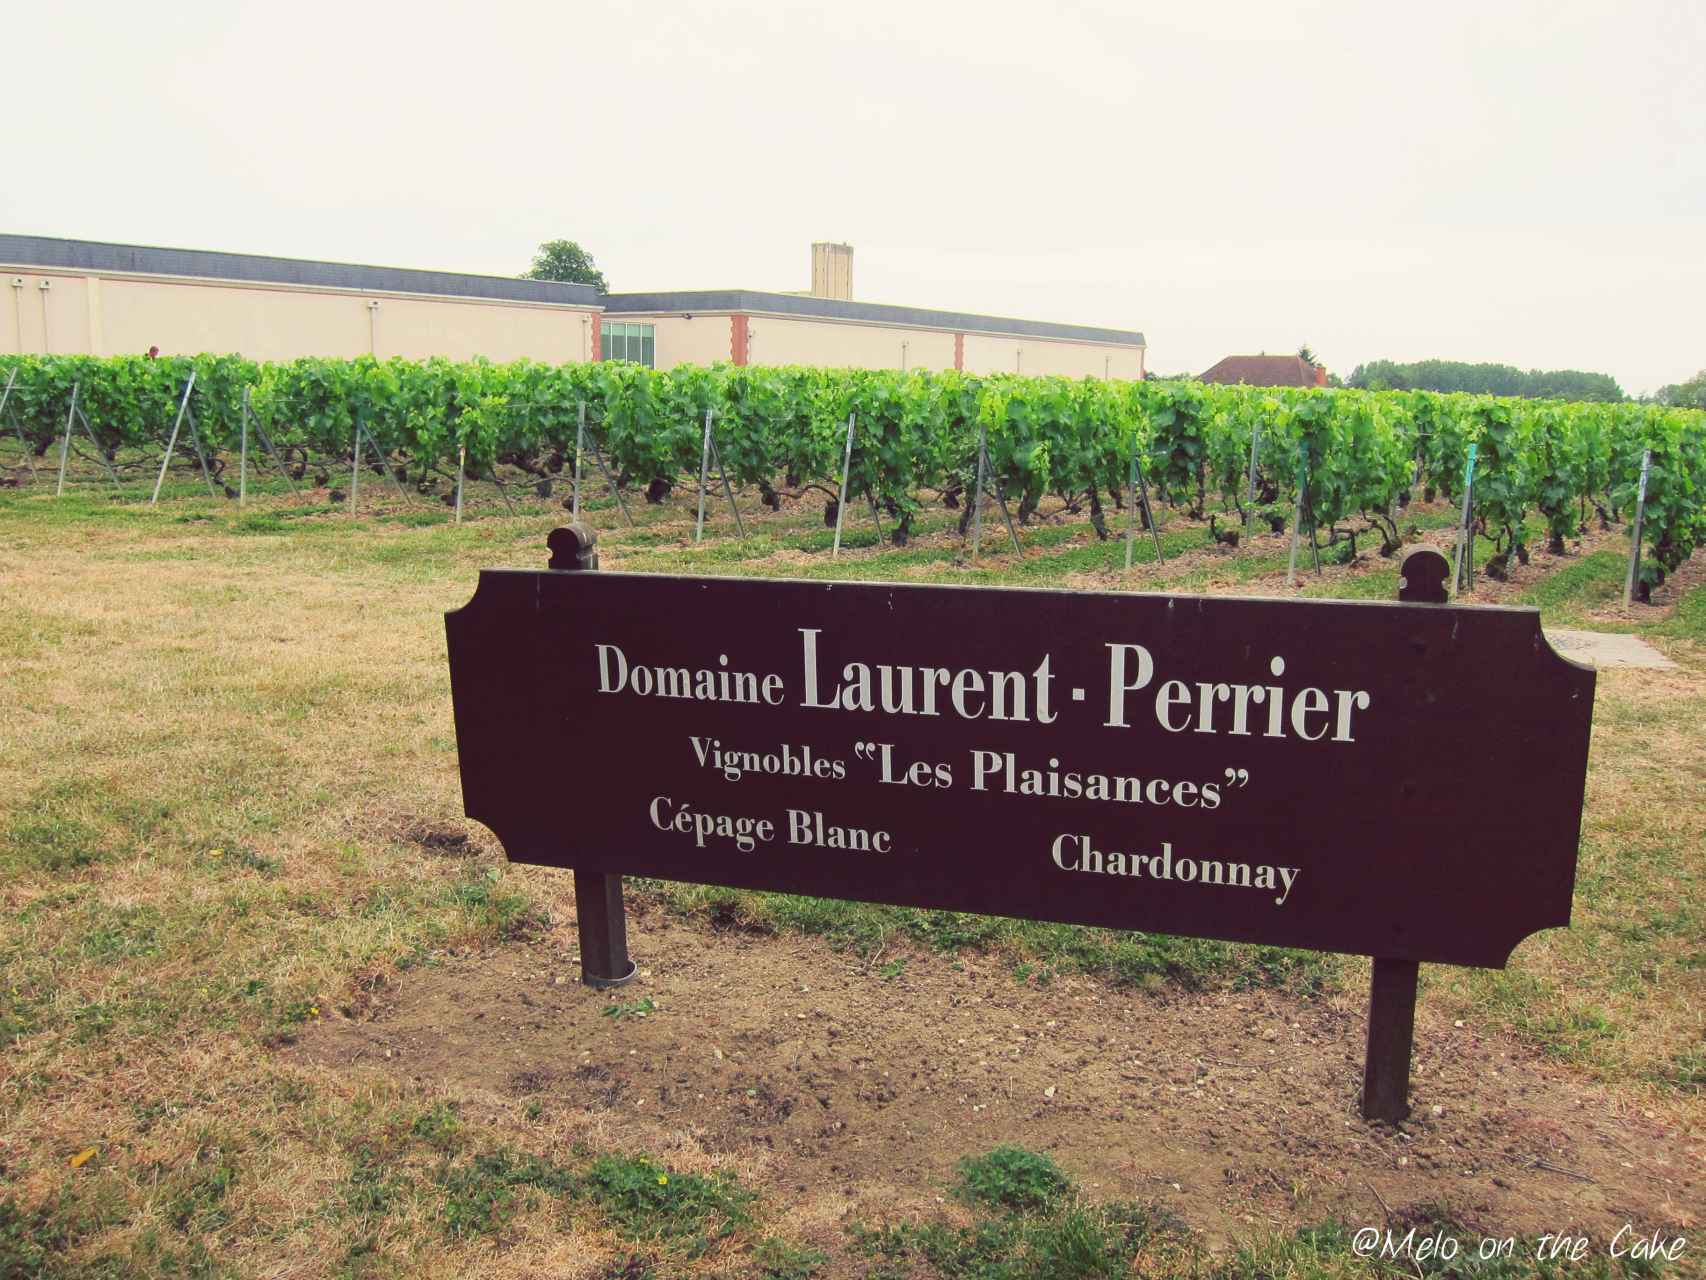 Uno de los viñedos de Laurent-Perrier.